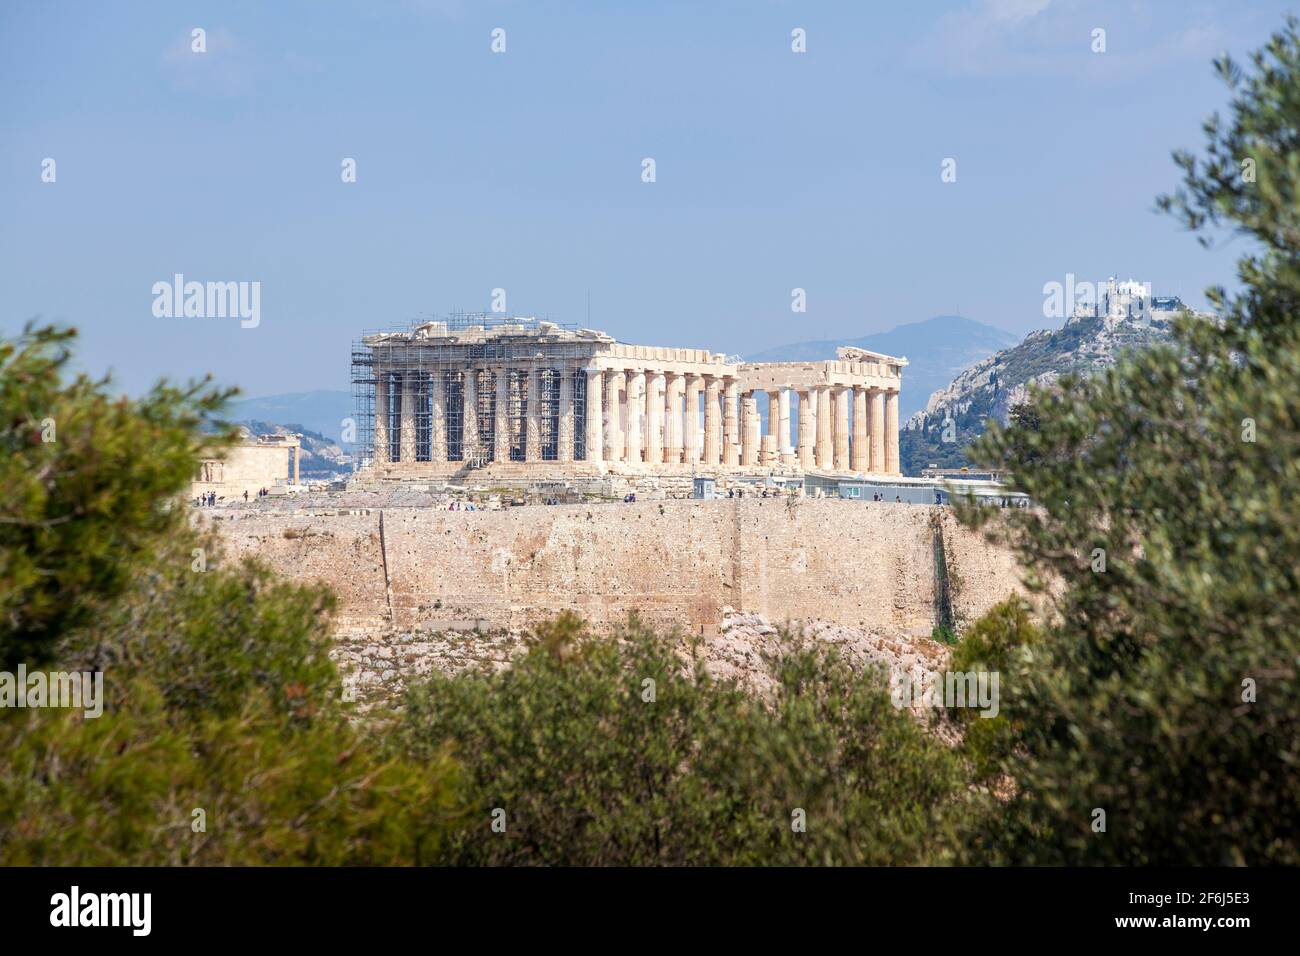 Vue sur le Parthénon depuis la colline de Filopappou. On peut voir le temple du Parthénon, du 5e siècle avant Jésus-Christ, sur la colline sacrée d'Akropolis, à Athènes, en Grèce. Banque D'Images